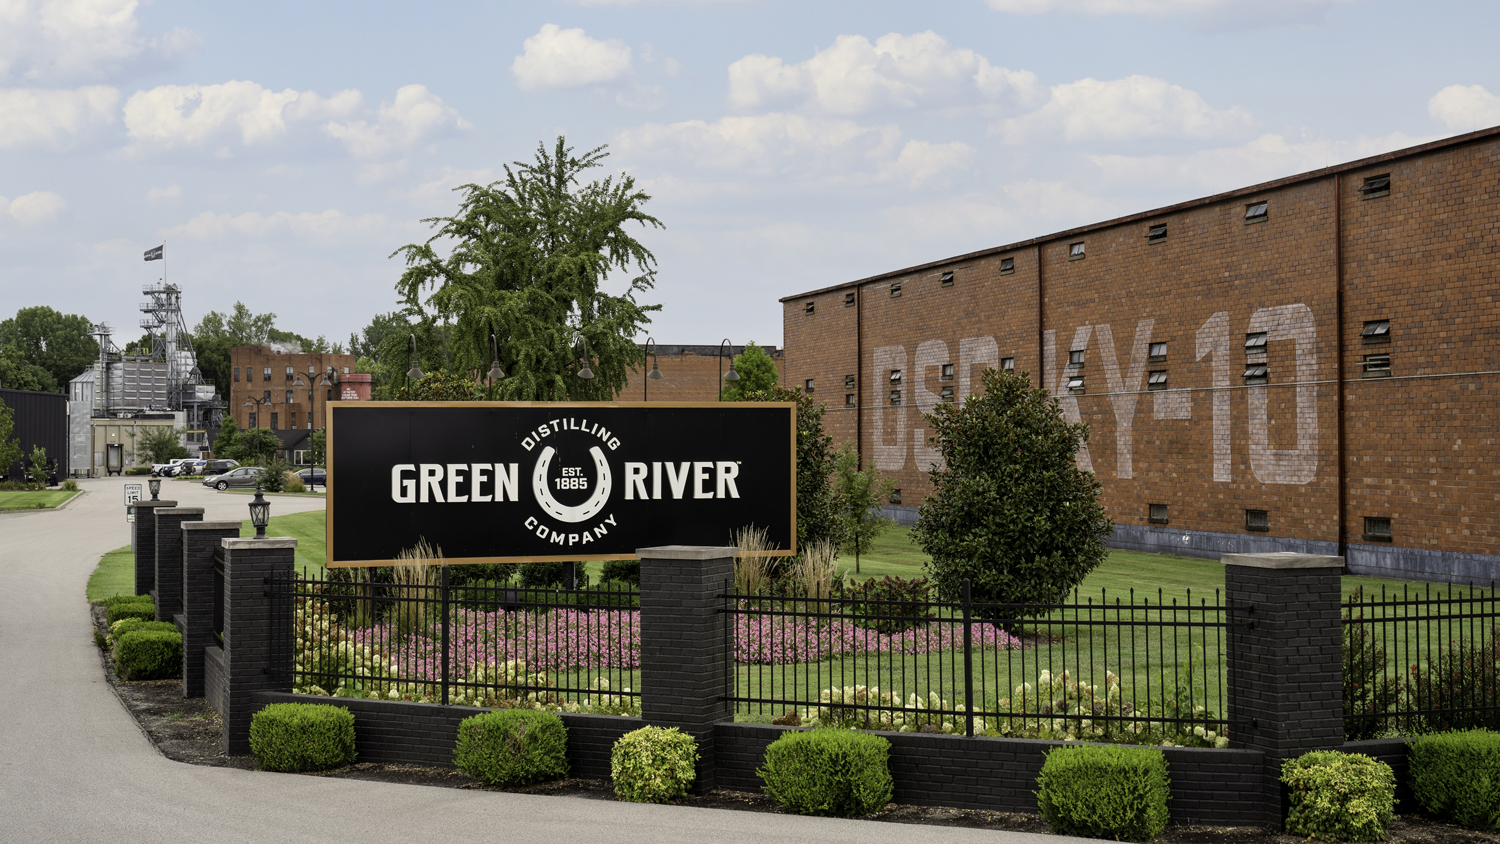 Green River Distilling